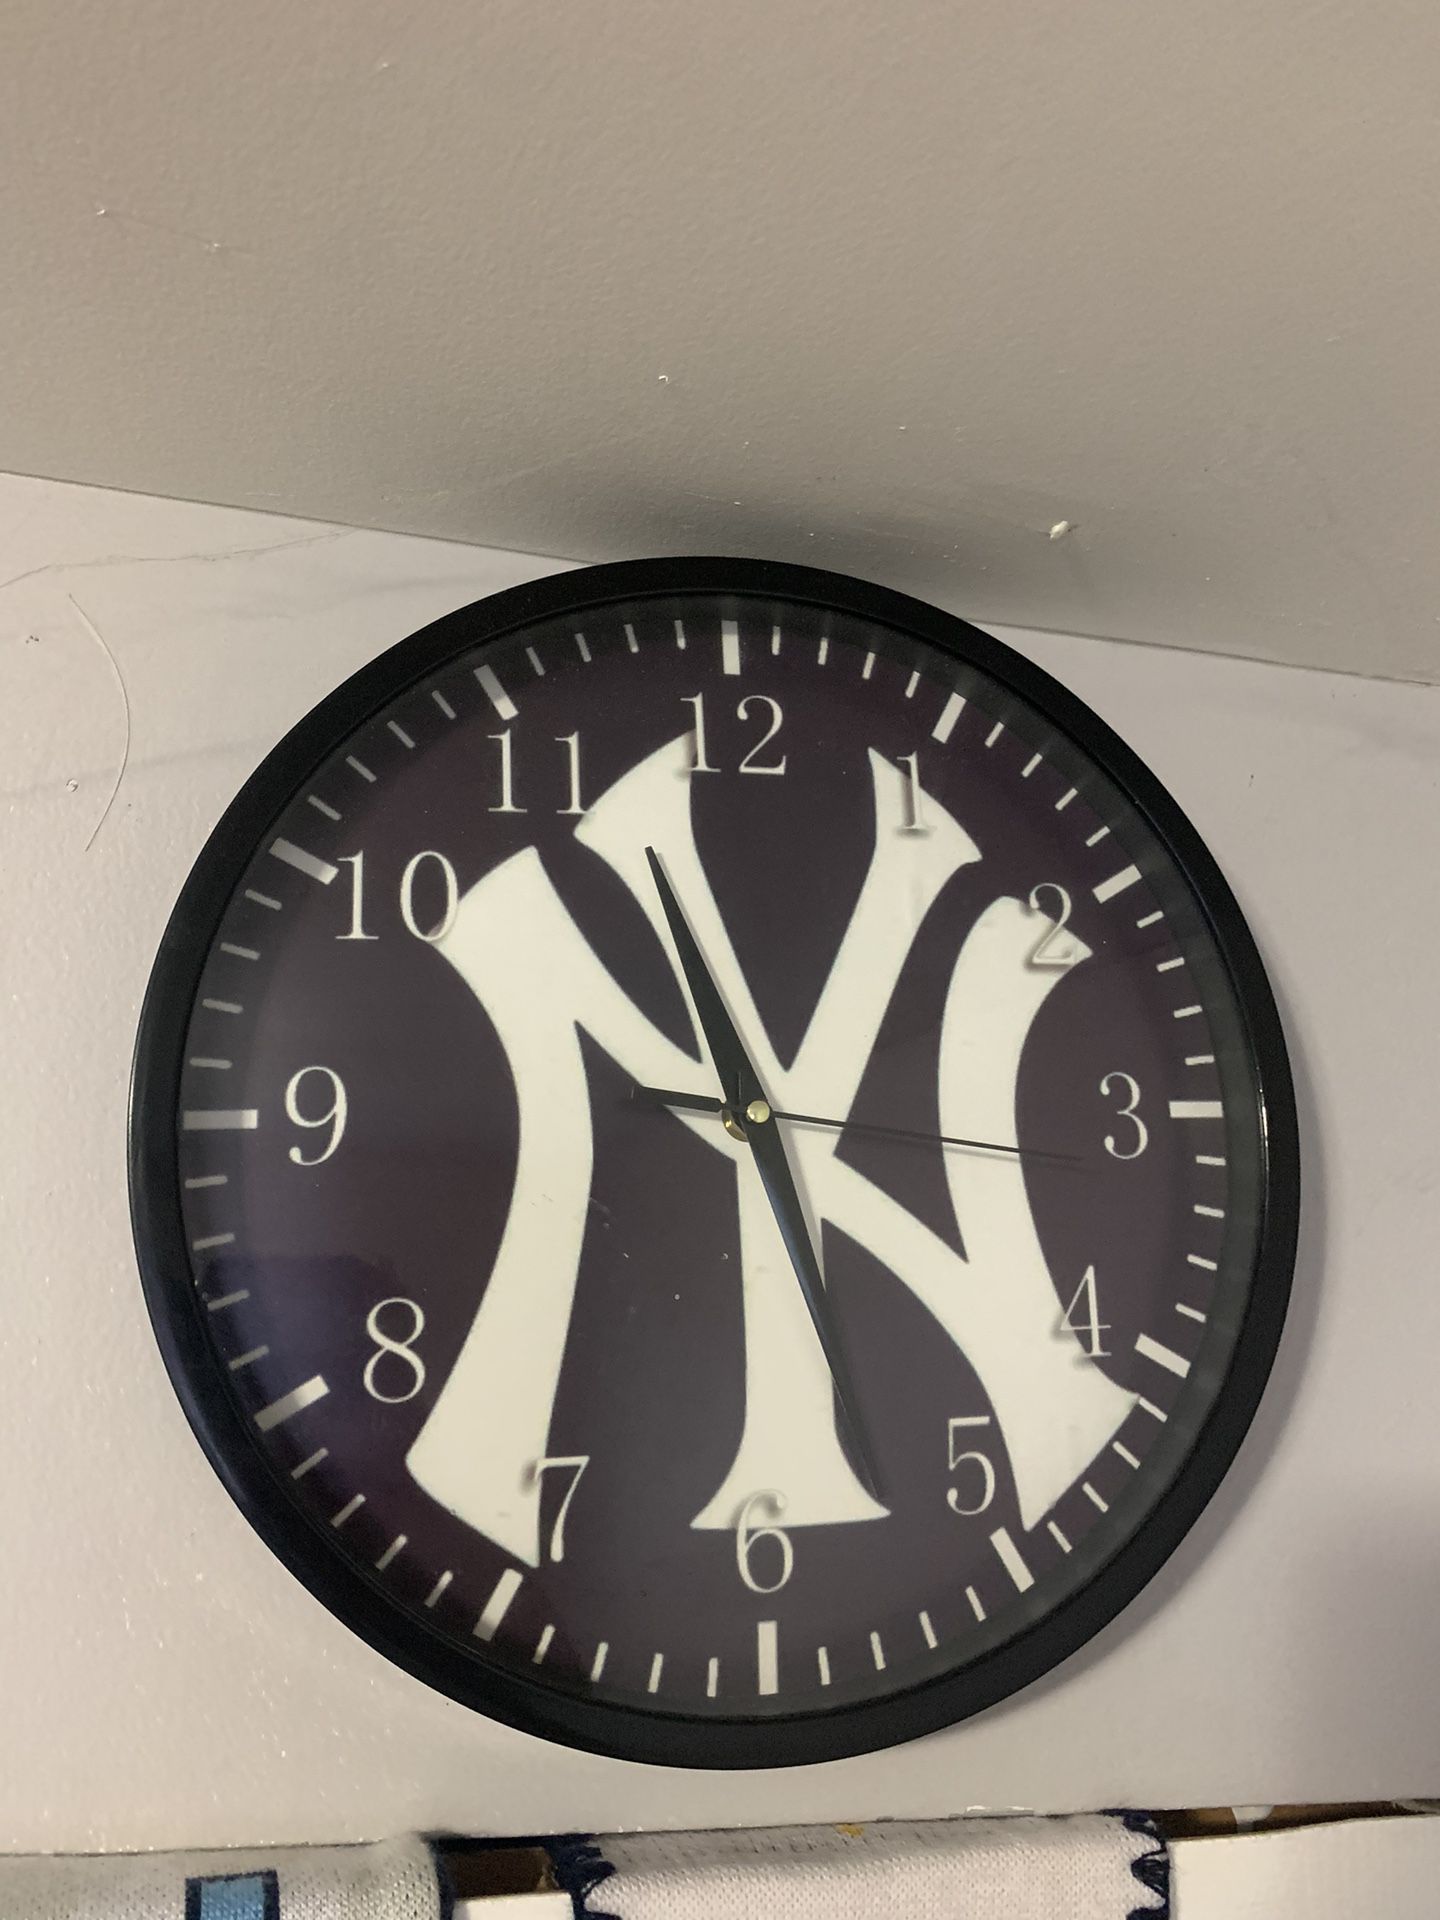  New York Yankees Clock